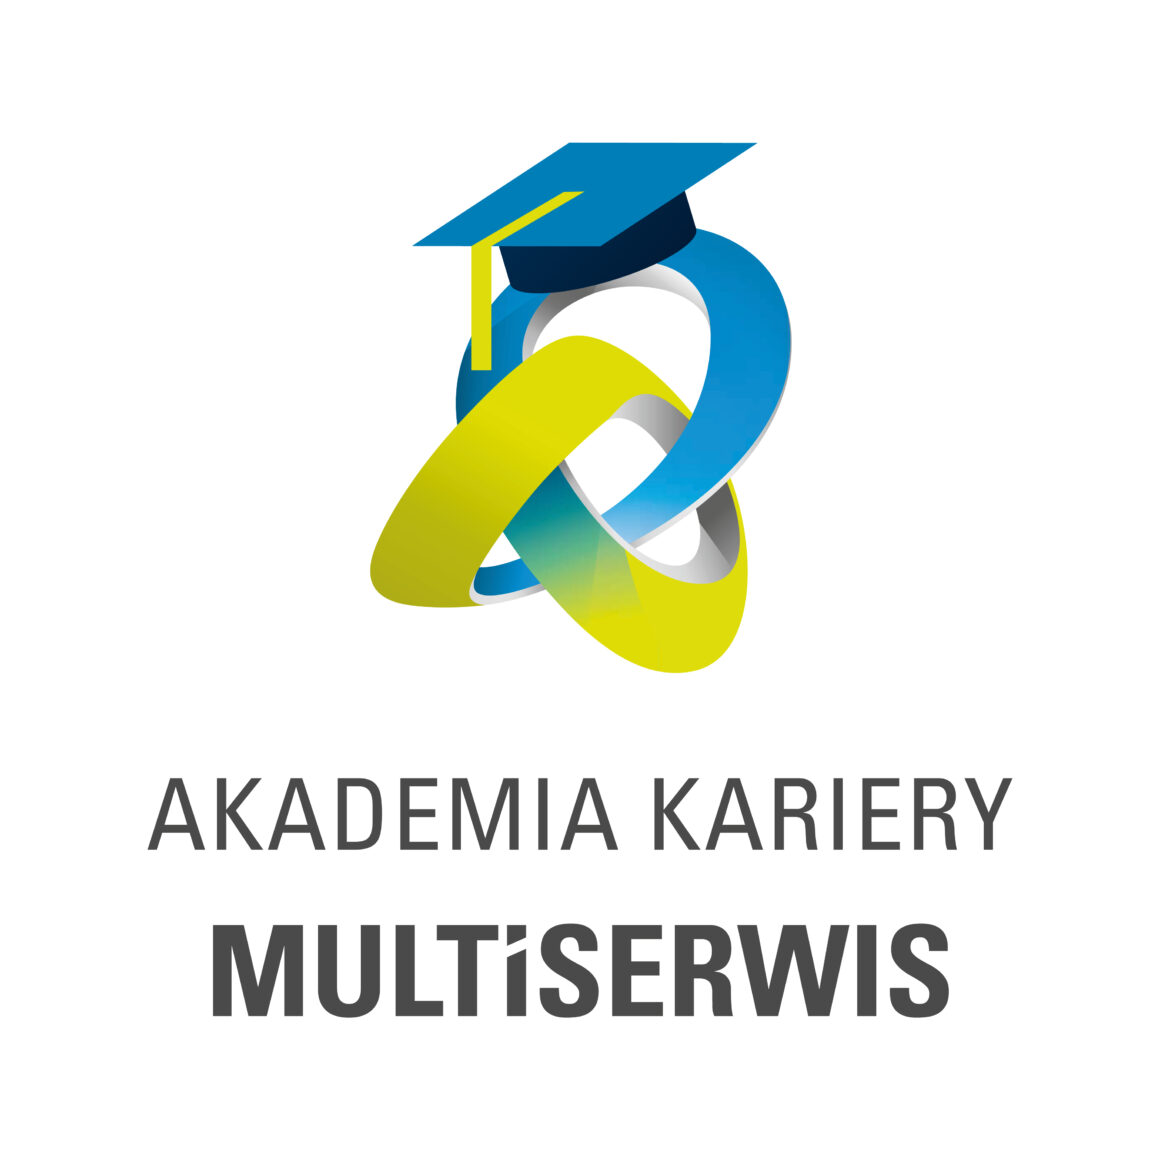 Akademia Kariery MULTISERWIS